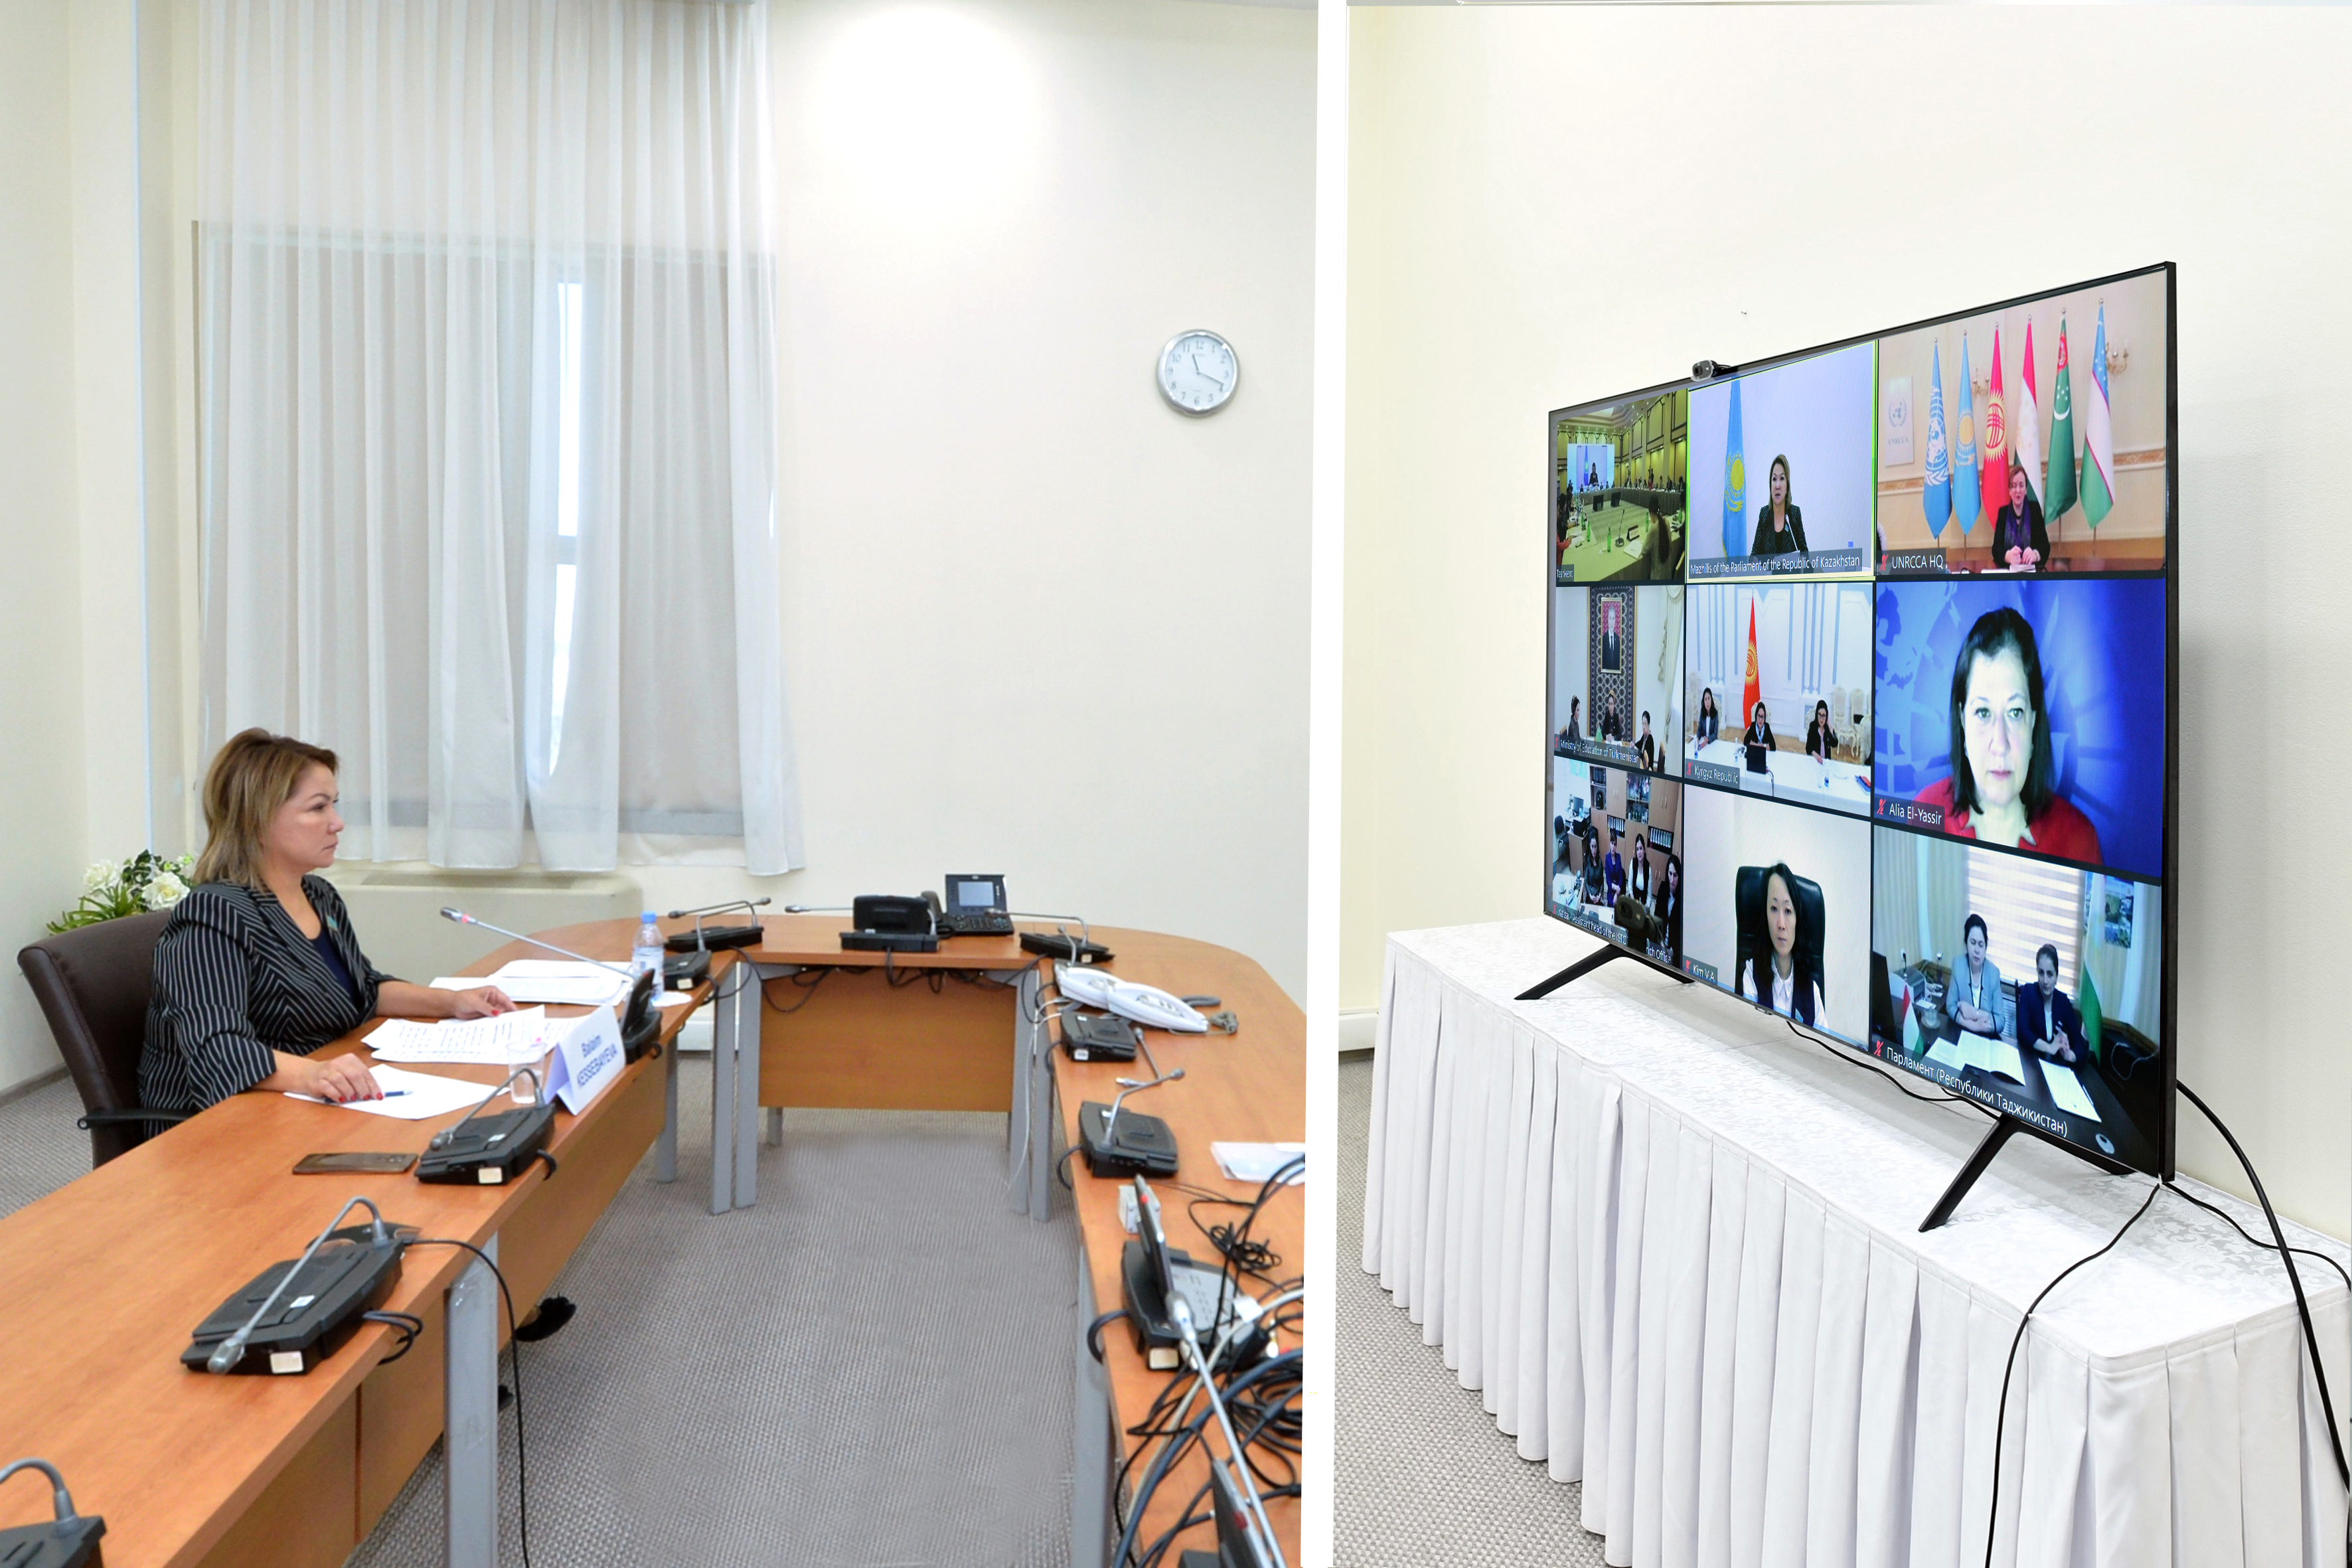 Сегодня в режиме видеоконференцсвязи приняла участие в региональной конференции на тему: «Устойчивое развитие и лидерство женщин в Центральной Азии», который состоялся в городе Ташкент с участием членов Диалога женщин-лидеров Центральной Азии. Мероприятие